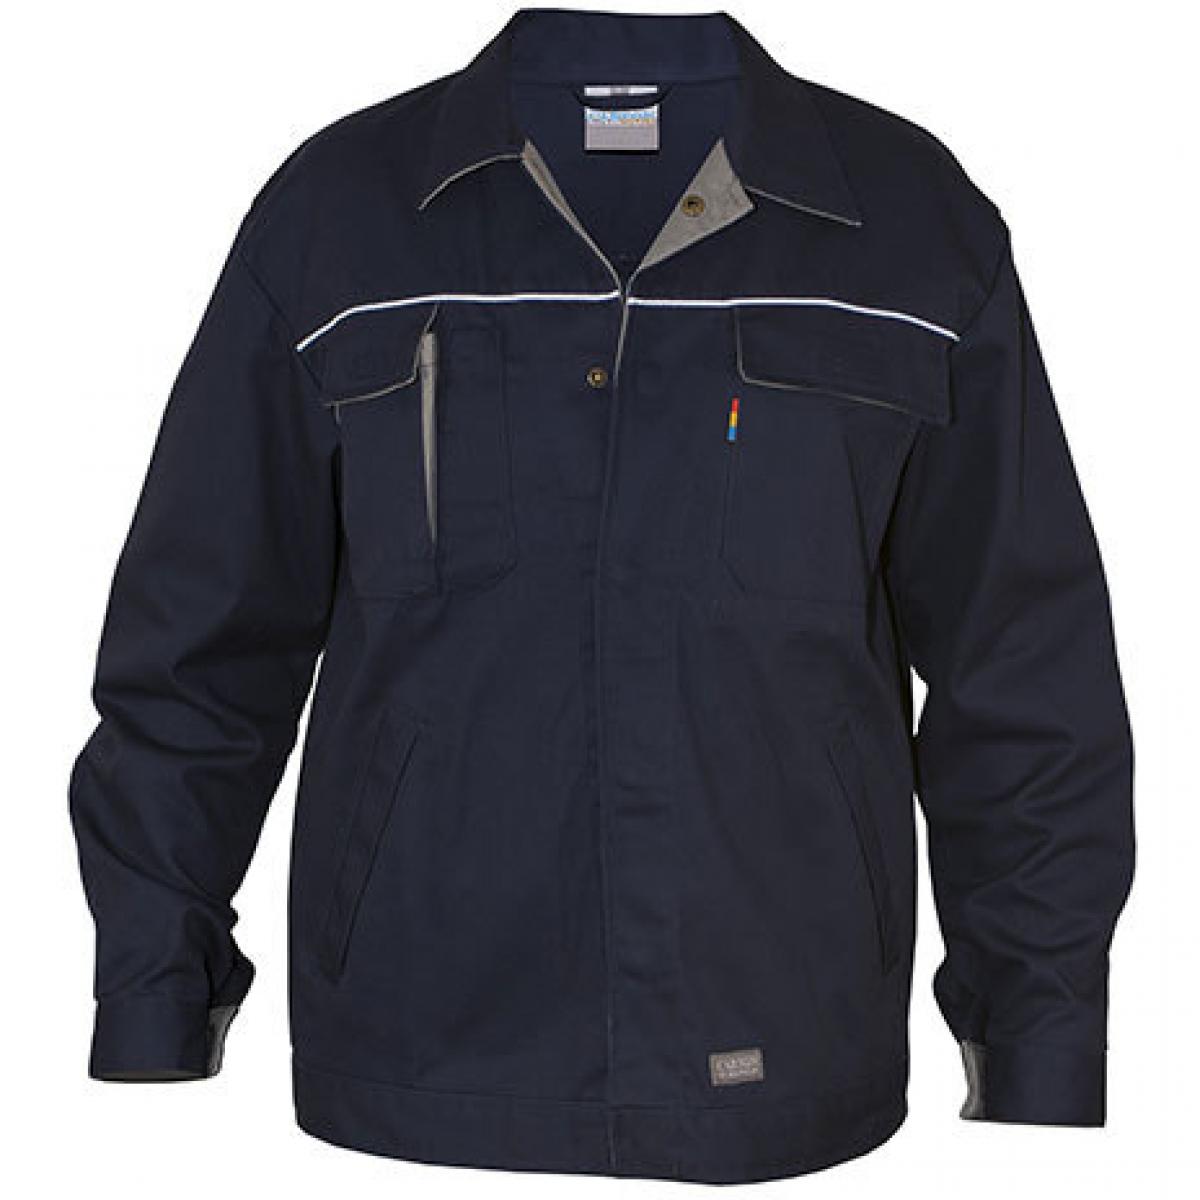 Hersteller: Carson Contrast Herstellernummer: CC710 Artikelbezeichnung: Herren Contrast Work Jacket / Bei 60 Grad waschbar Farbe: Deep Navy/Grey